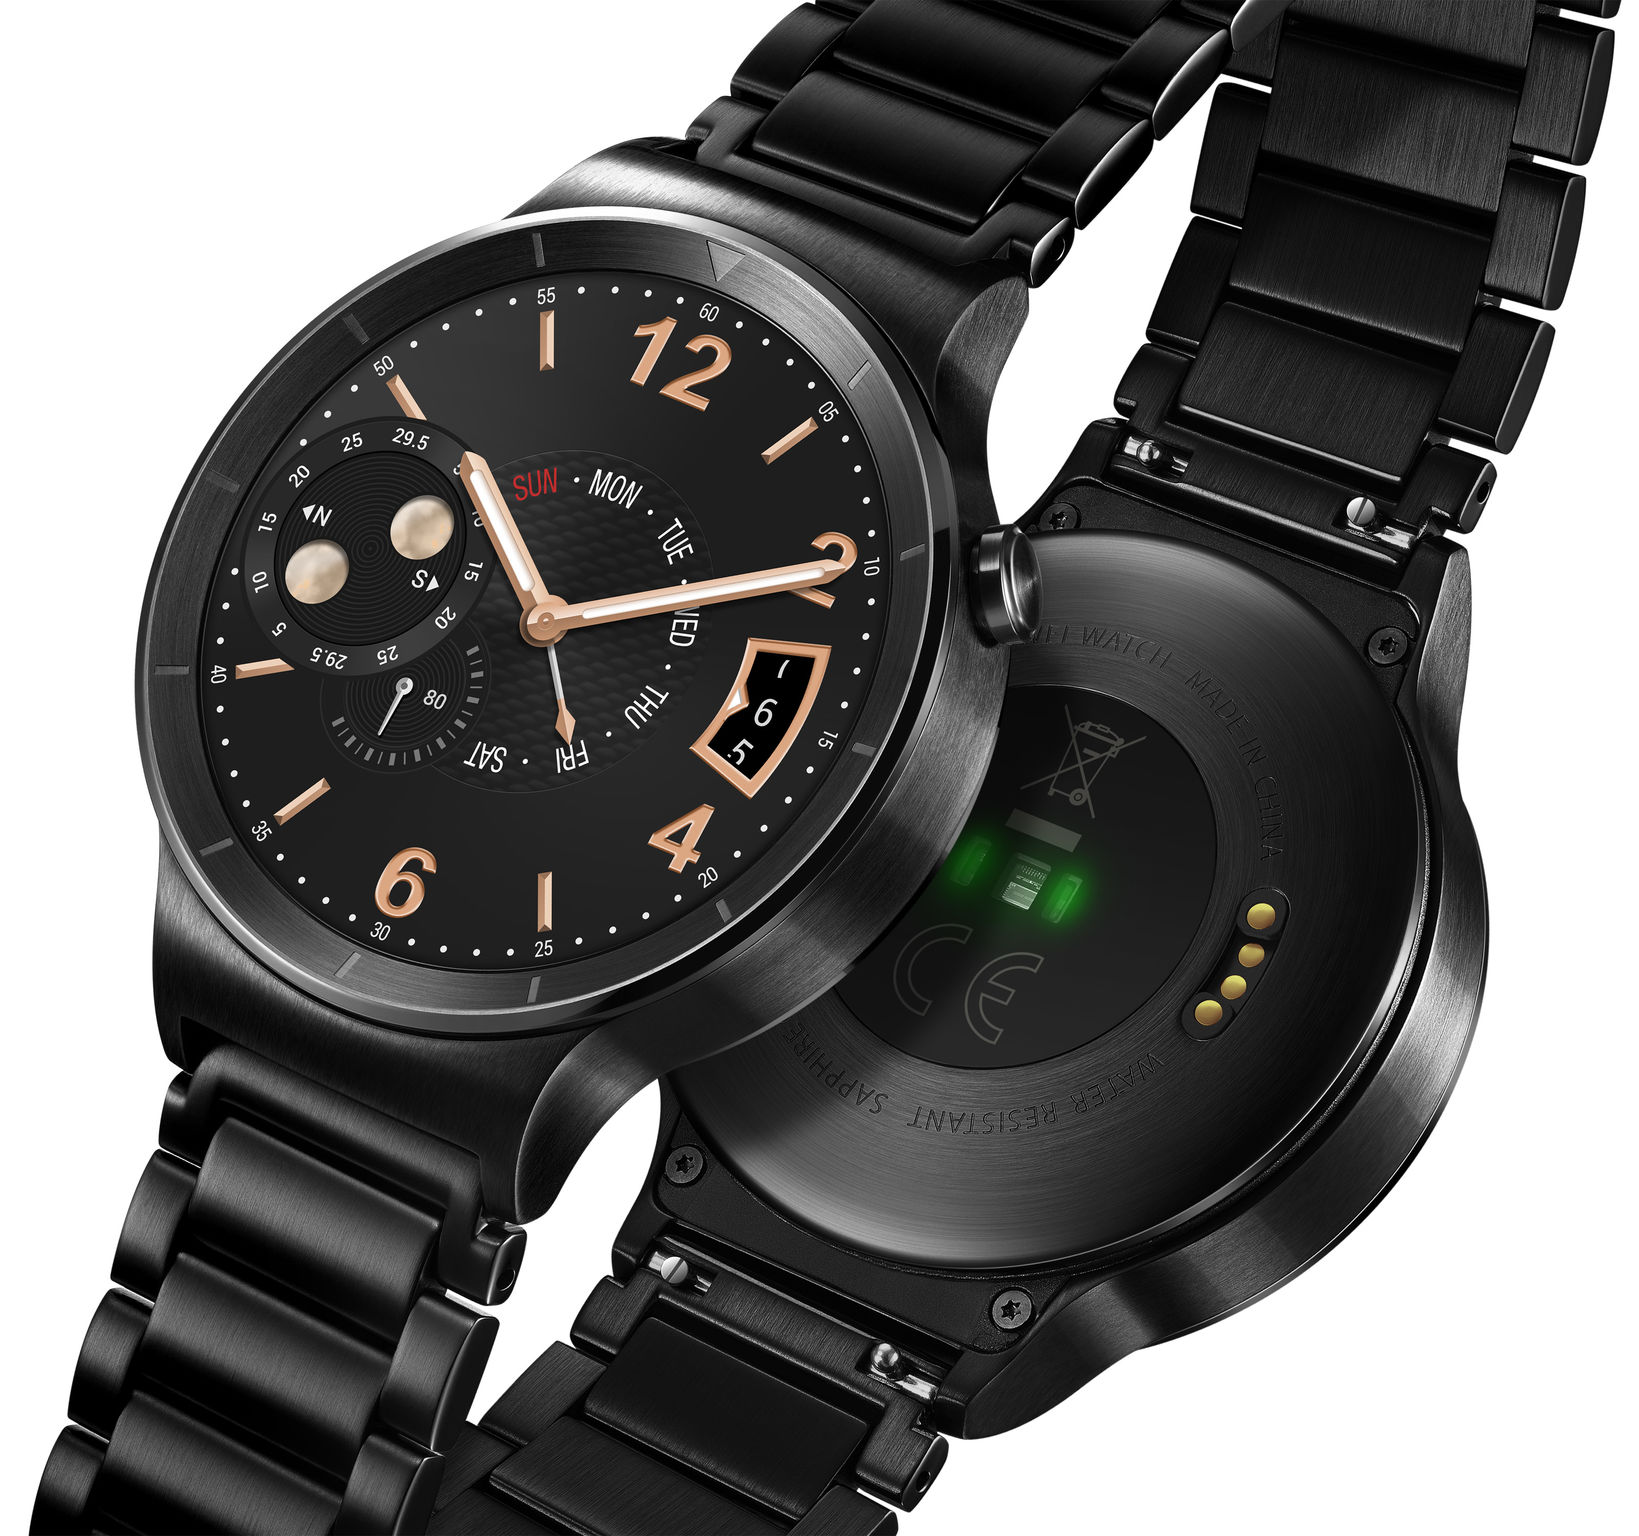 Huawei watch модели